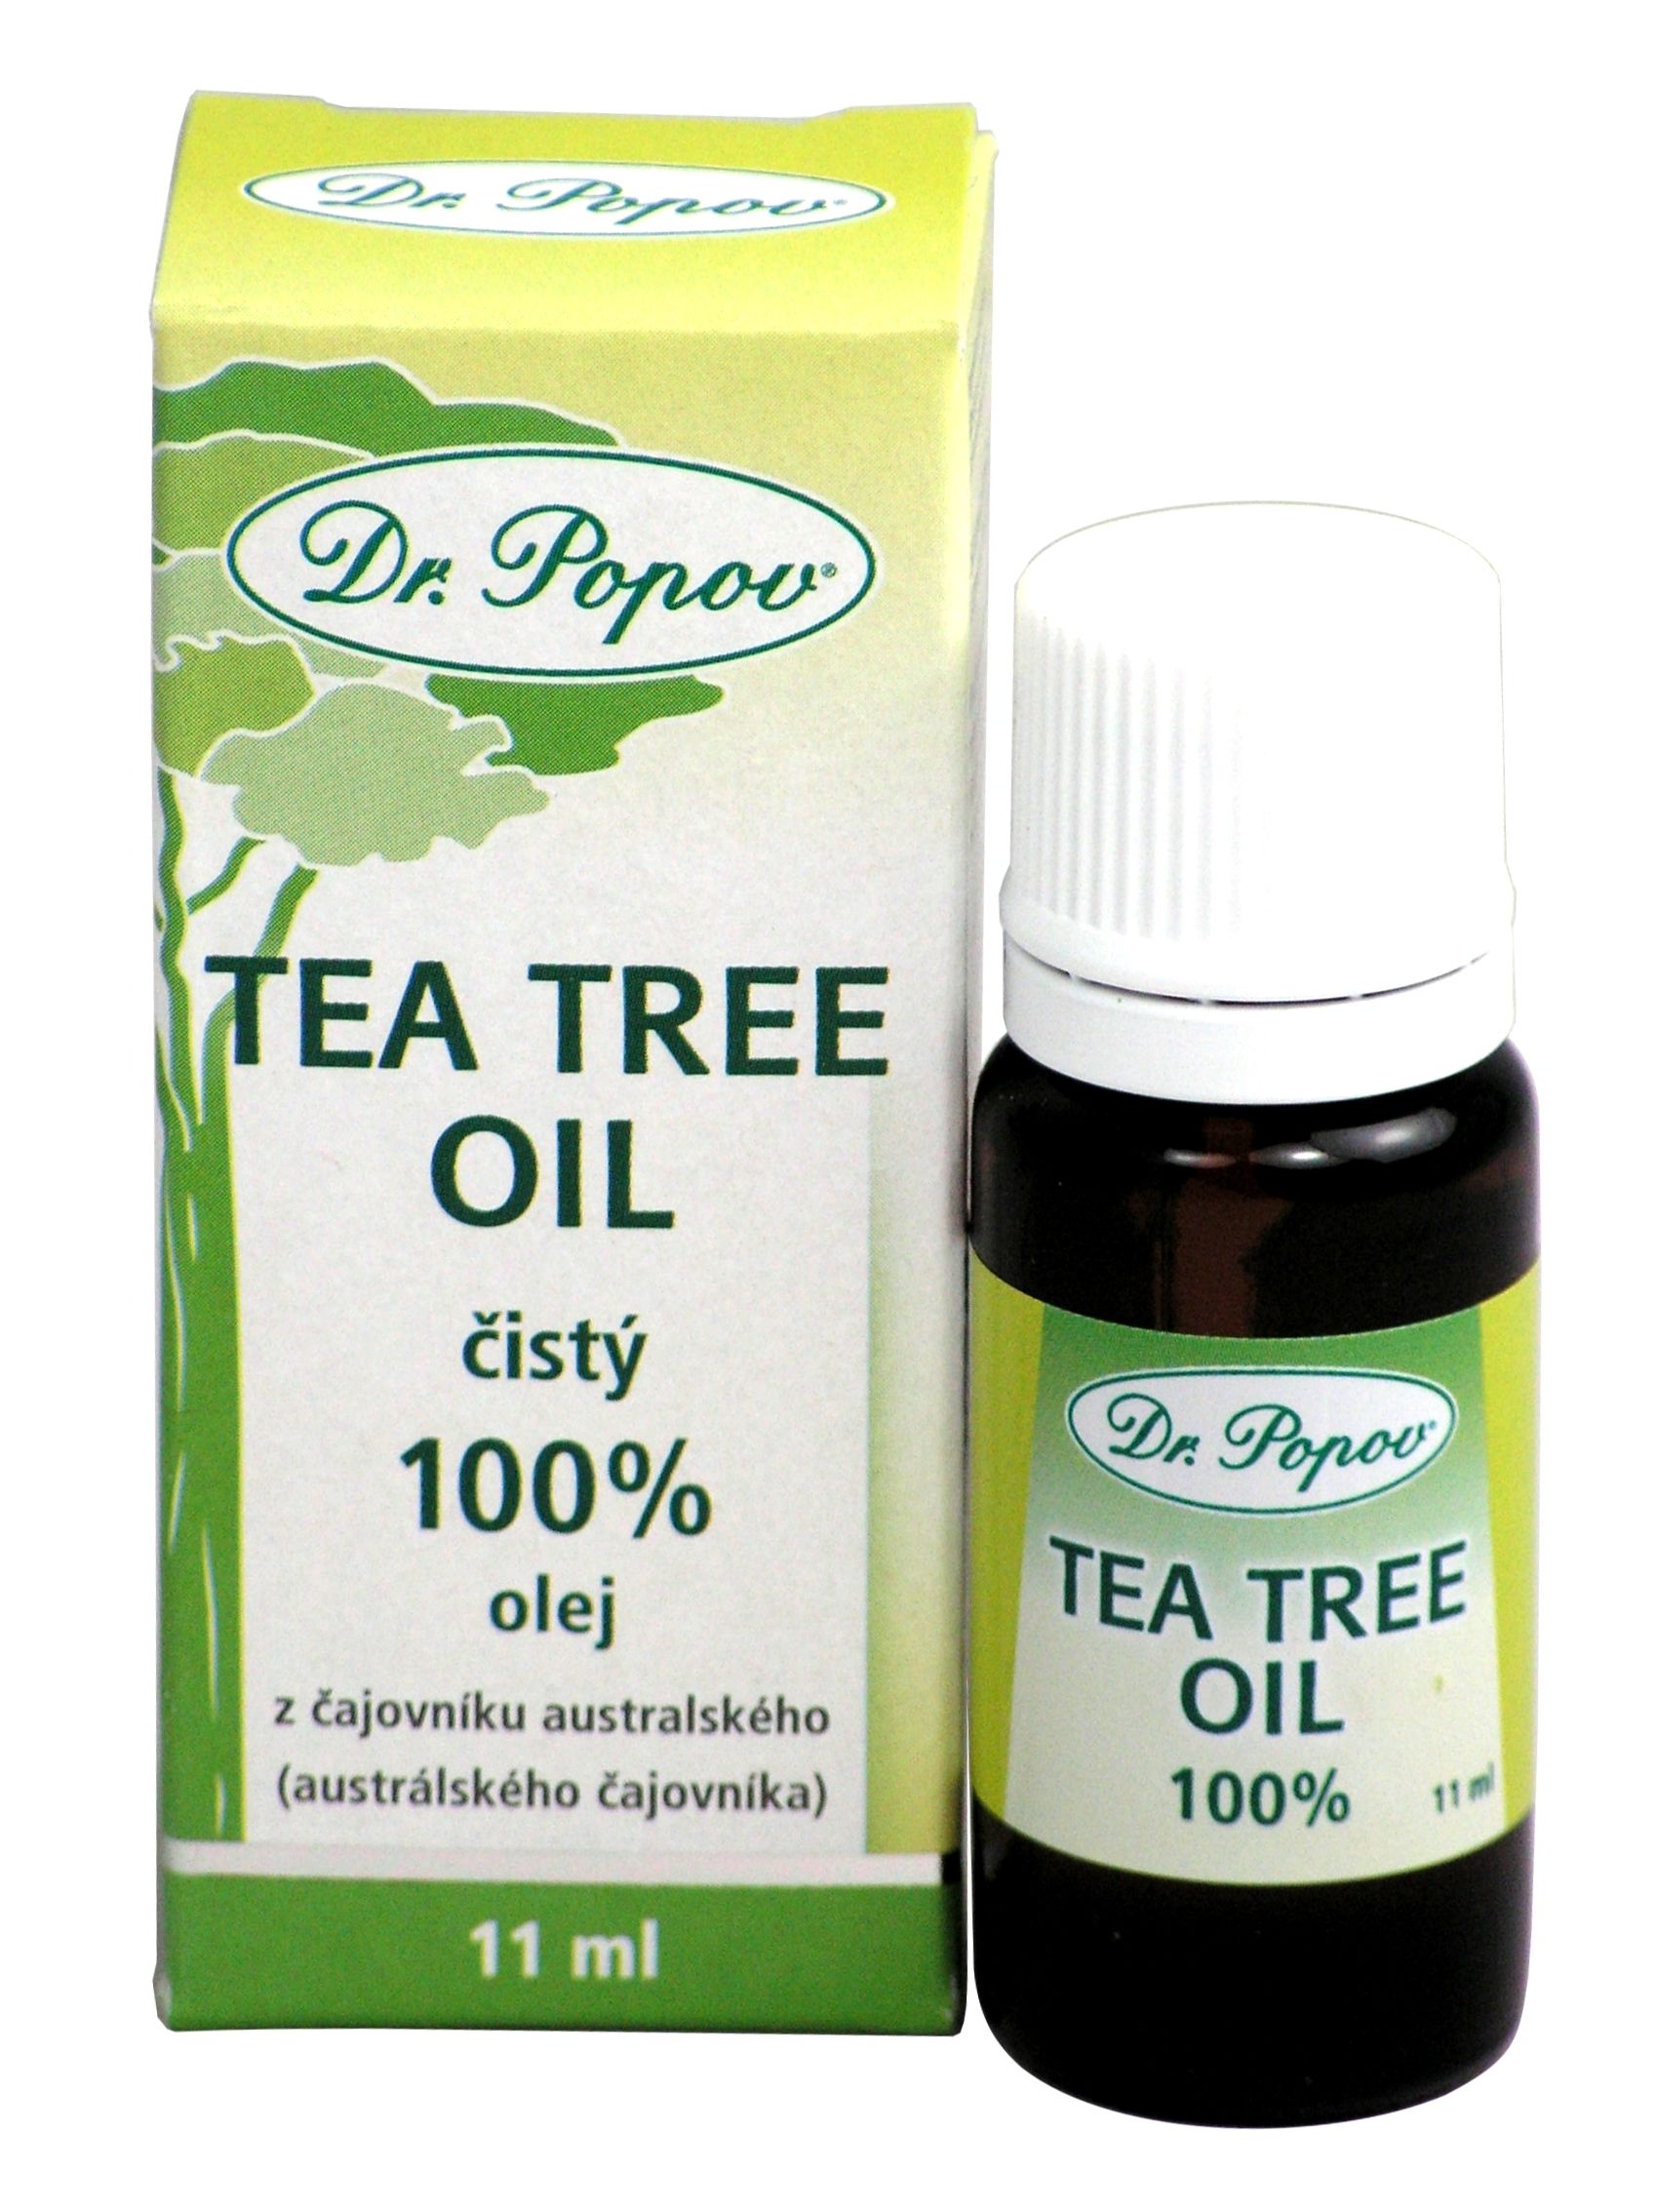 Dr. Popov Tea Tree Oil 11 ml Dr. Popov